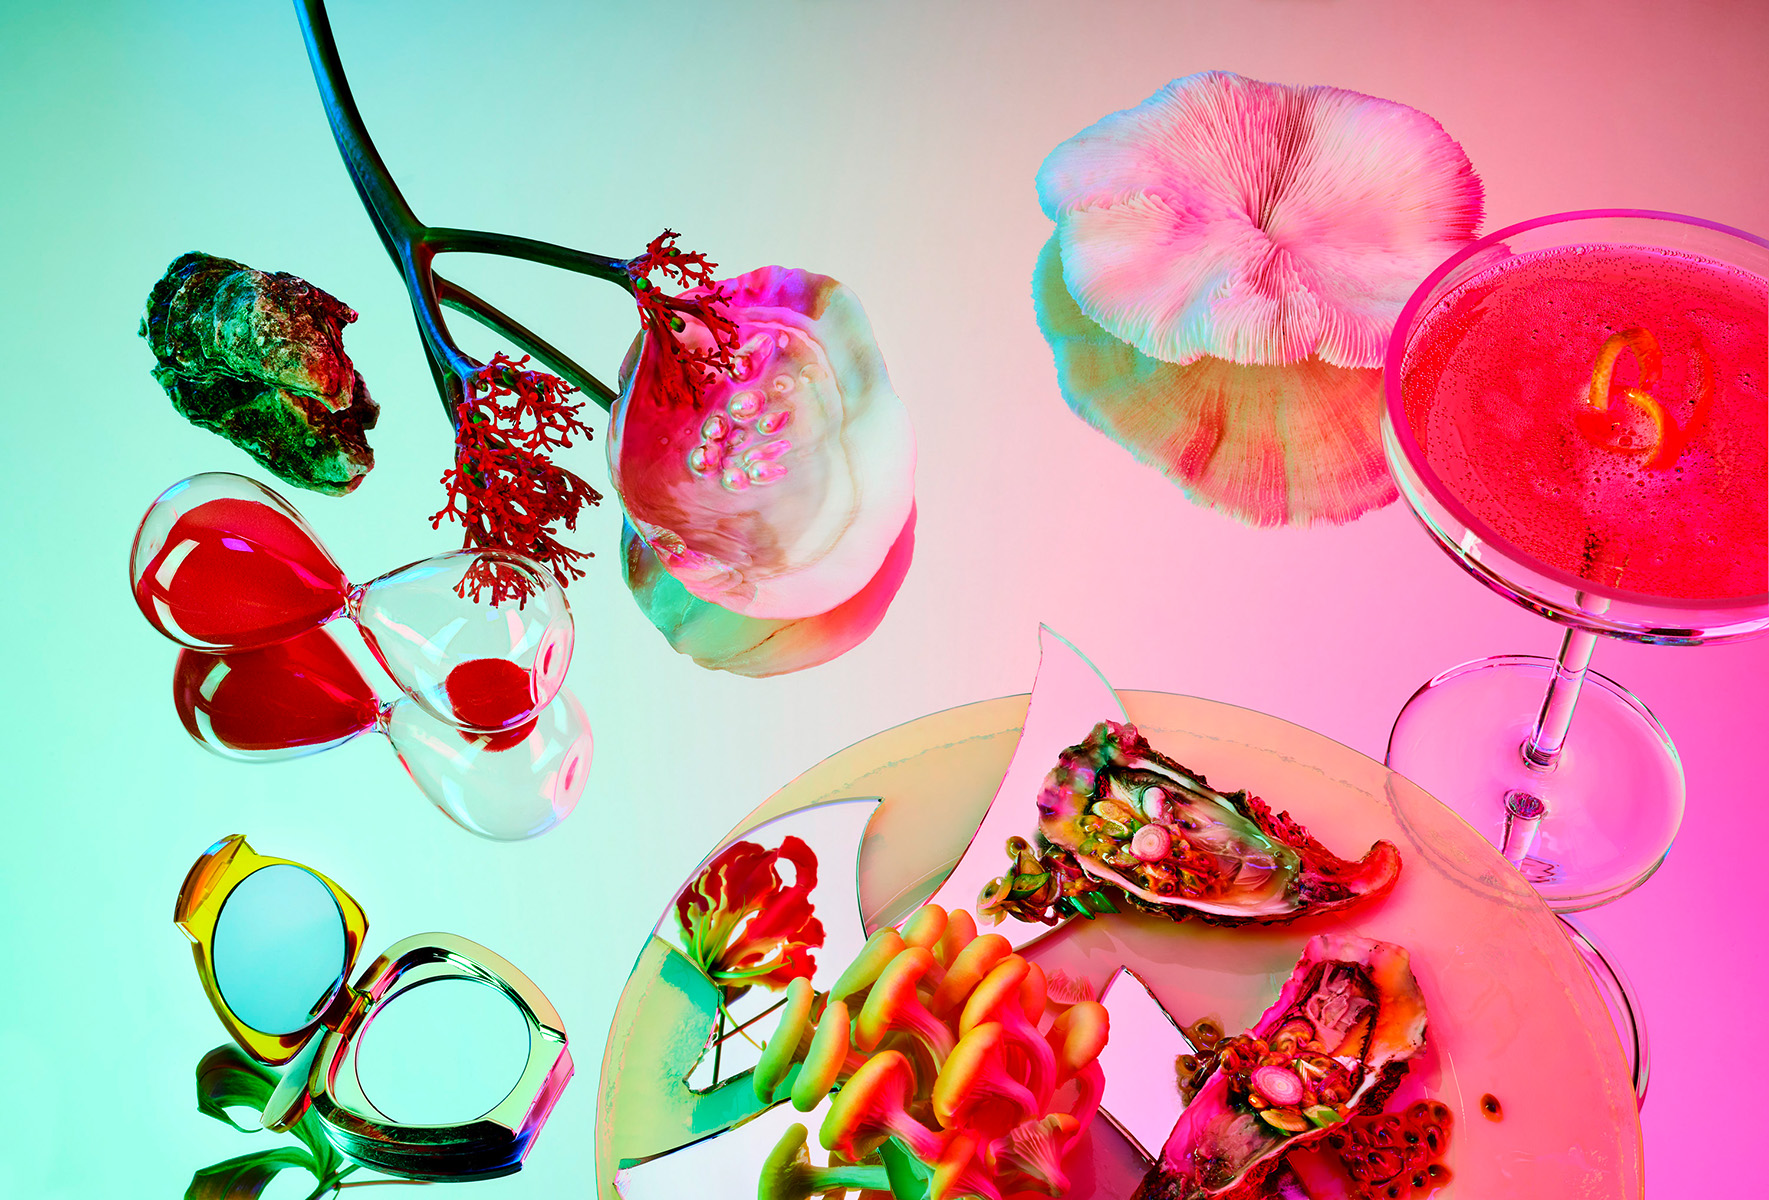 Auf einem Spiegel angerichtetes Essen mit Austern, Pilzen und einem Getränk | der Spiegel reflektiert einen Farbverlauf | das Motiv ist bei Ausstellung in Hamburg an den Messehallen zu sehen | Studio Hackenberg Werbefotografie Foodfotografie Regisseur